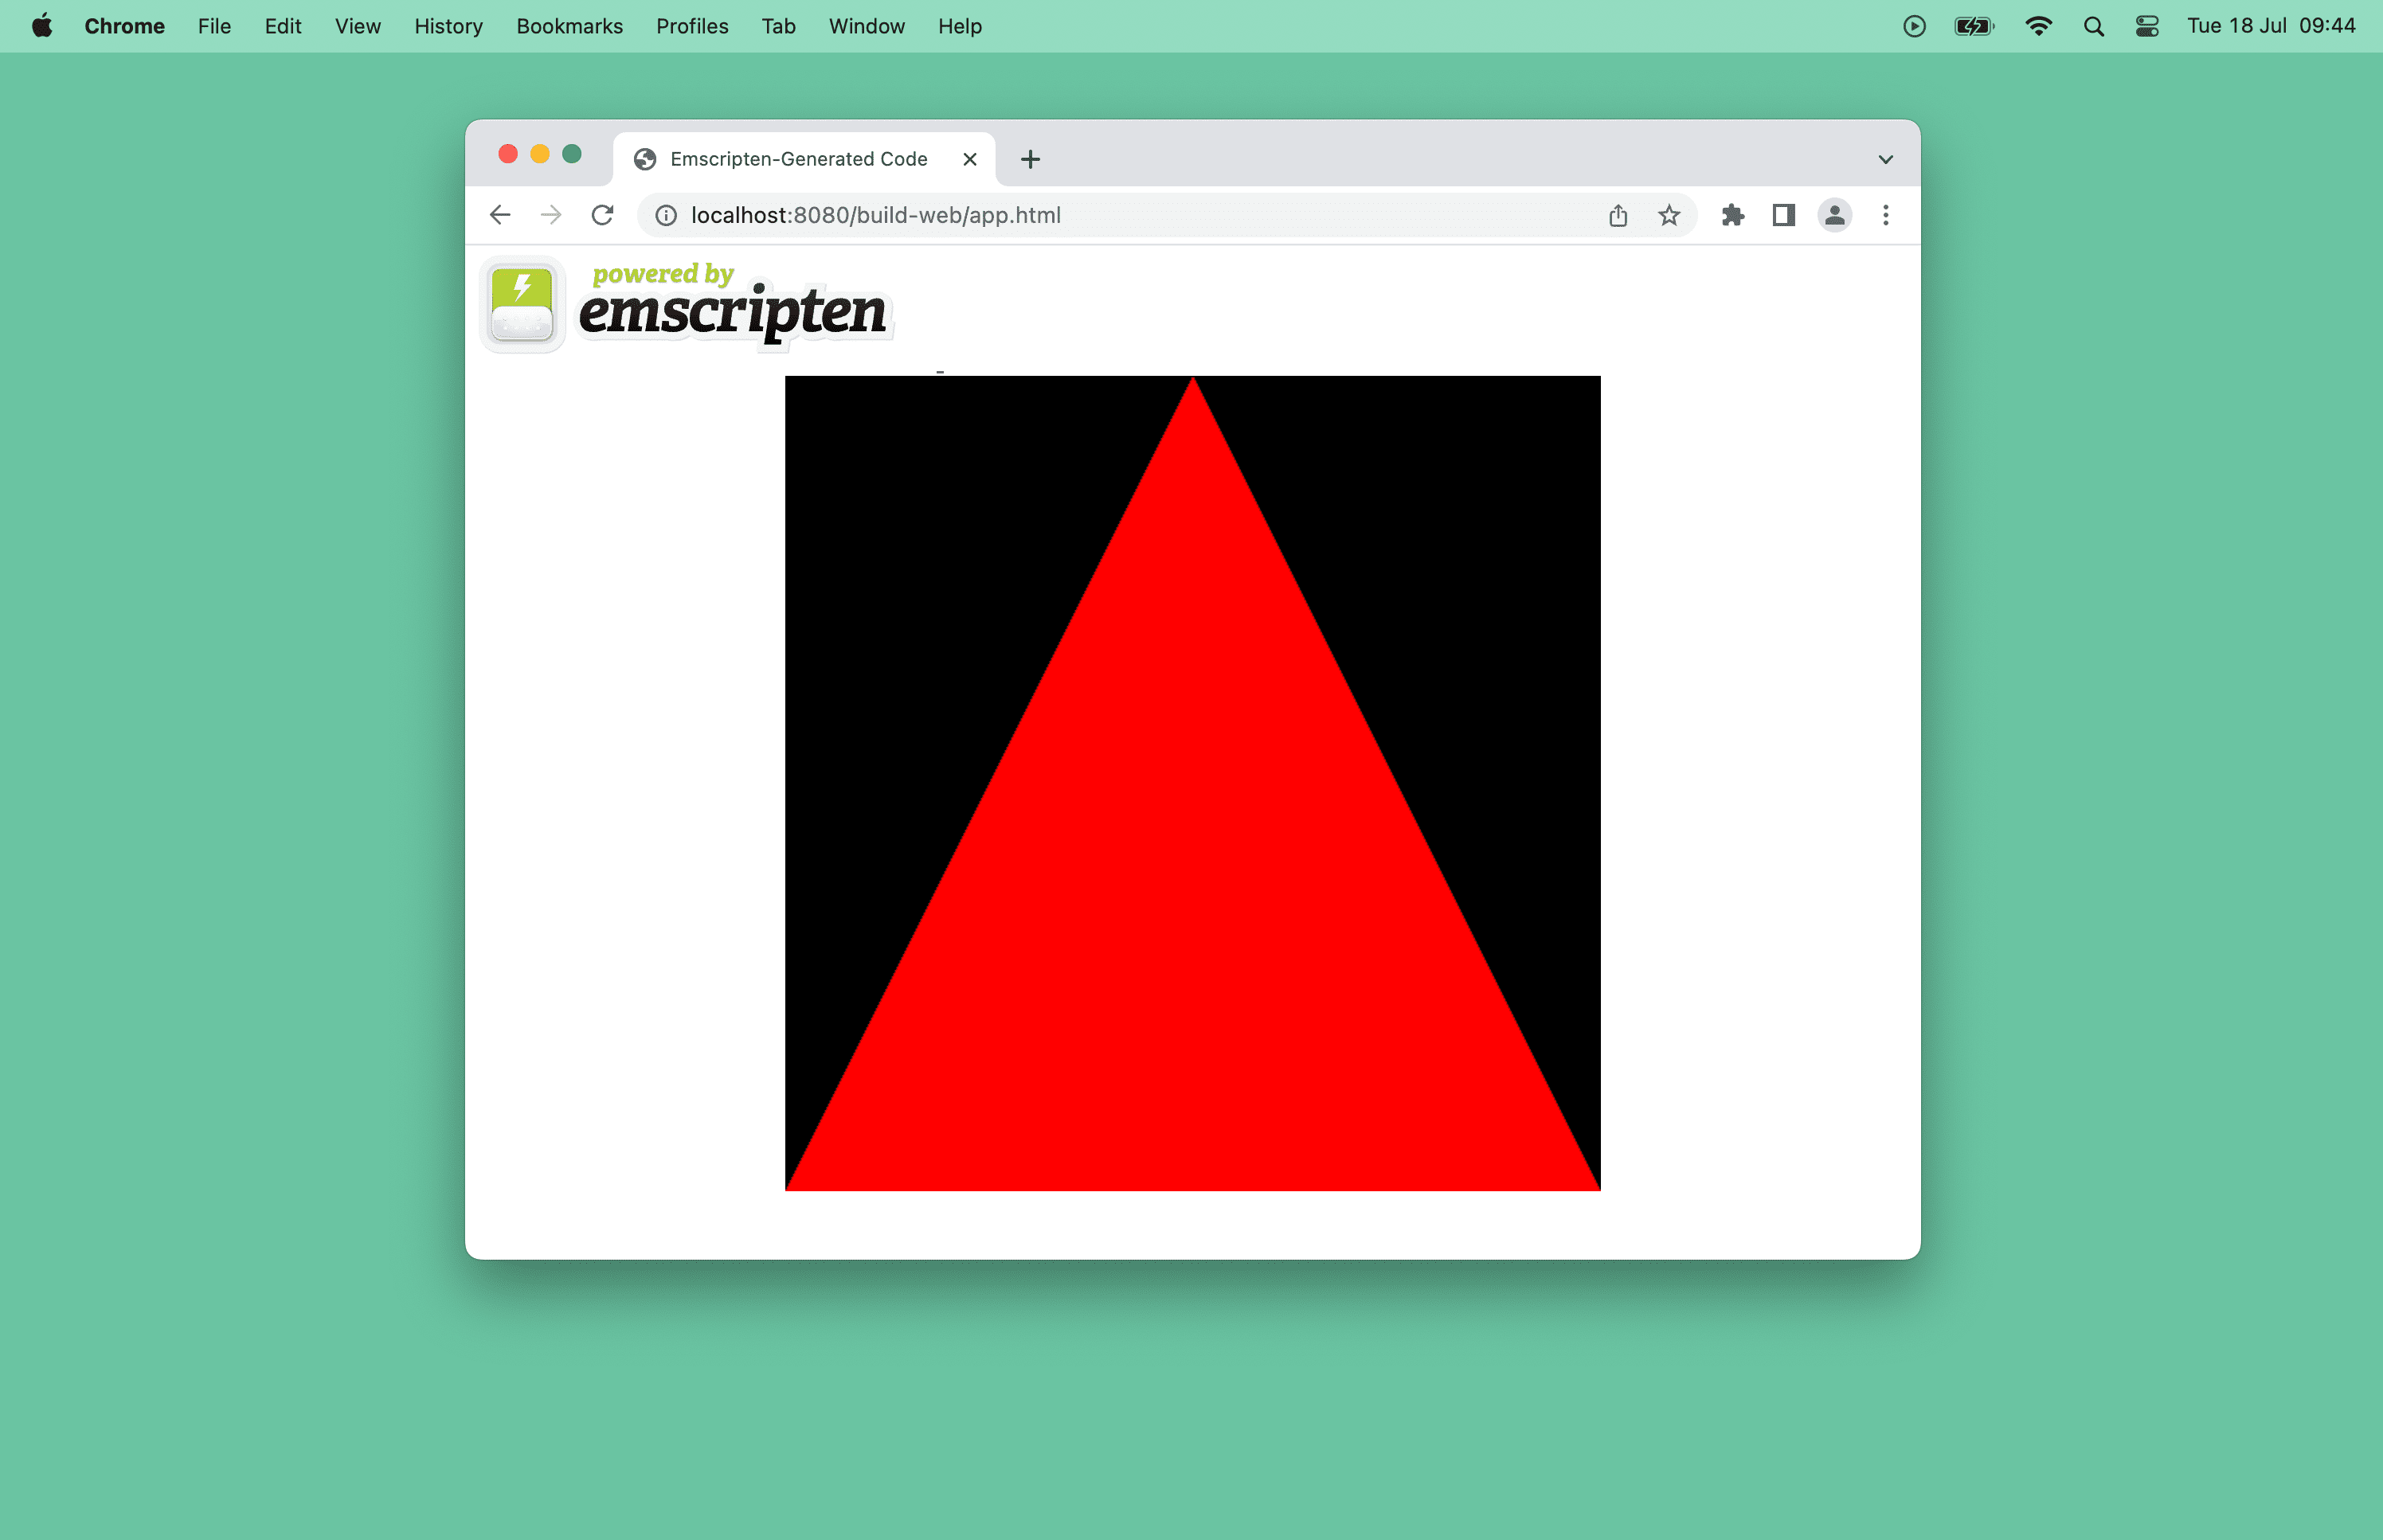 Screenshot di un triangolo rosso in una finestra del browser.